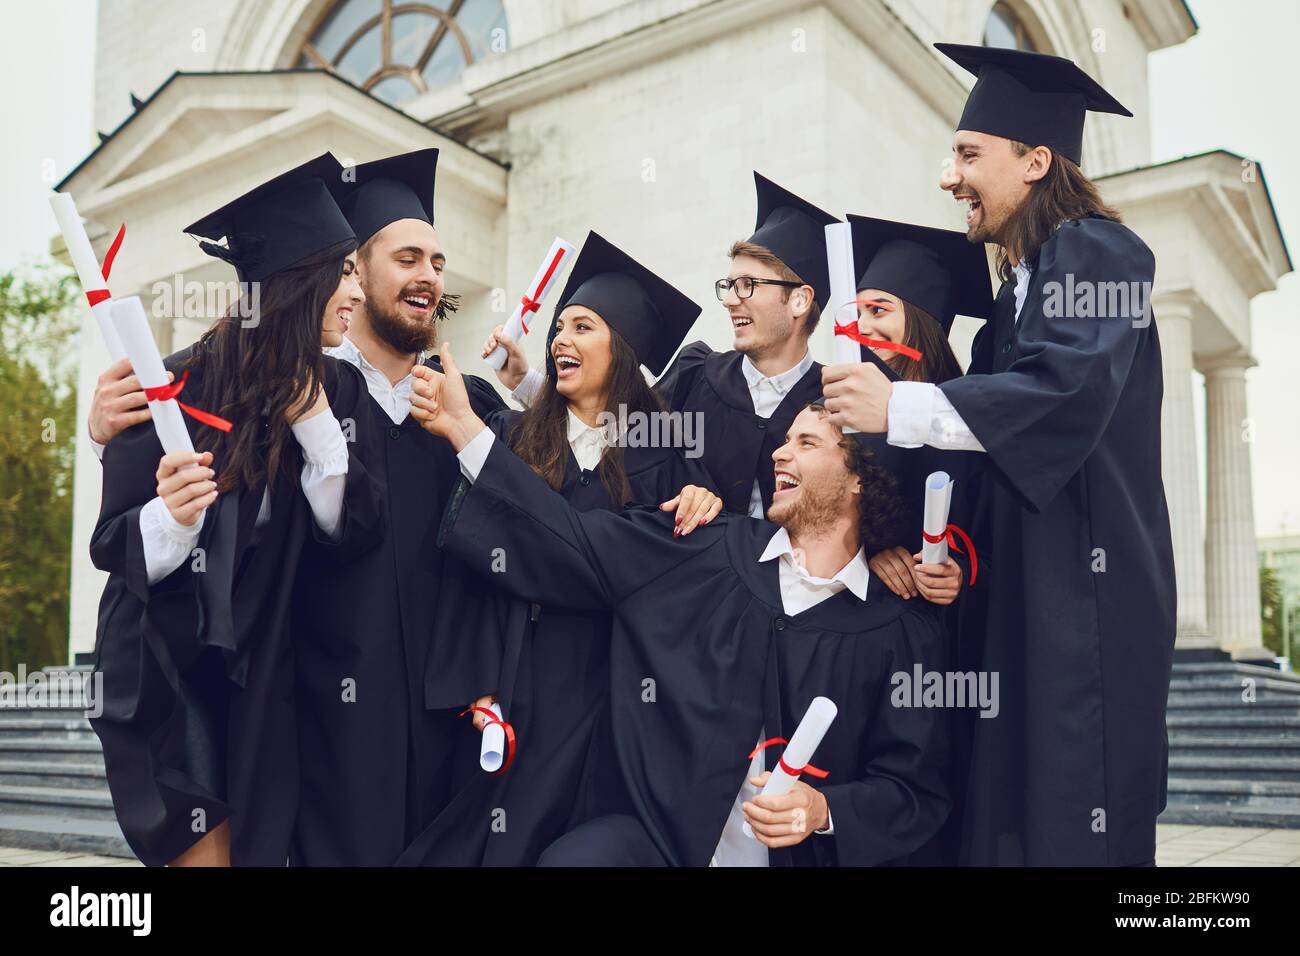 Un groupe de diplômés avec des rouleaux dans leurs mains sourient Banque D'Images